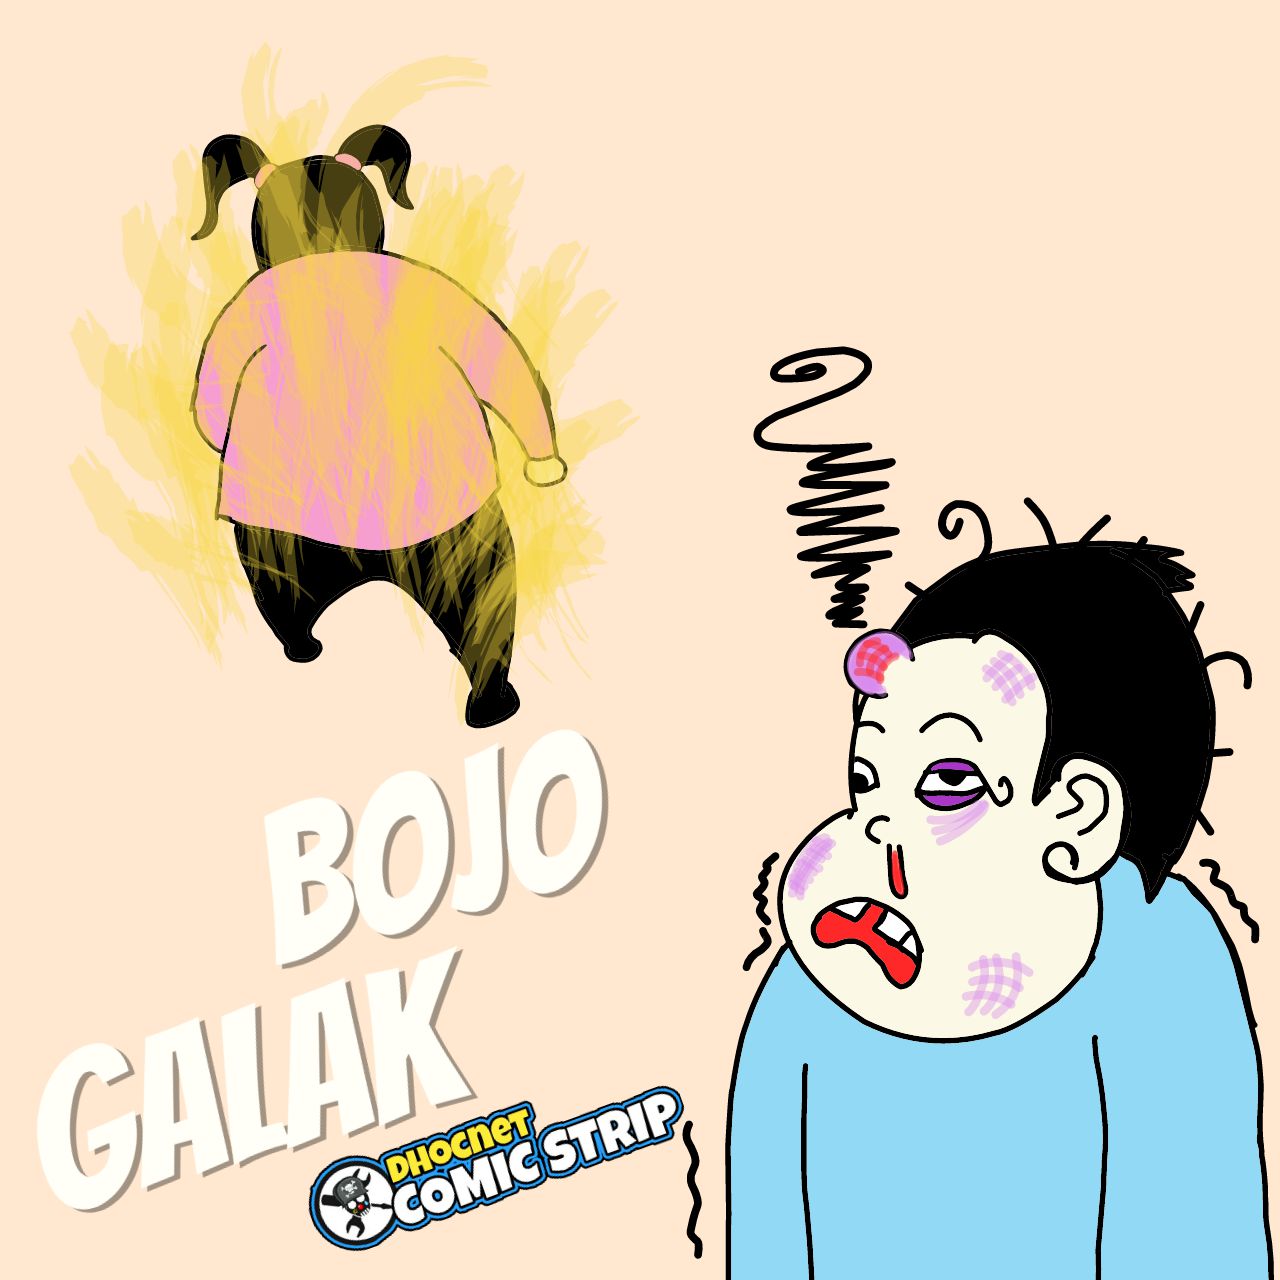 Baca komik baris "Bojo Galak" oleh @dhocnetcs